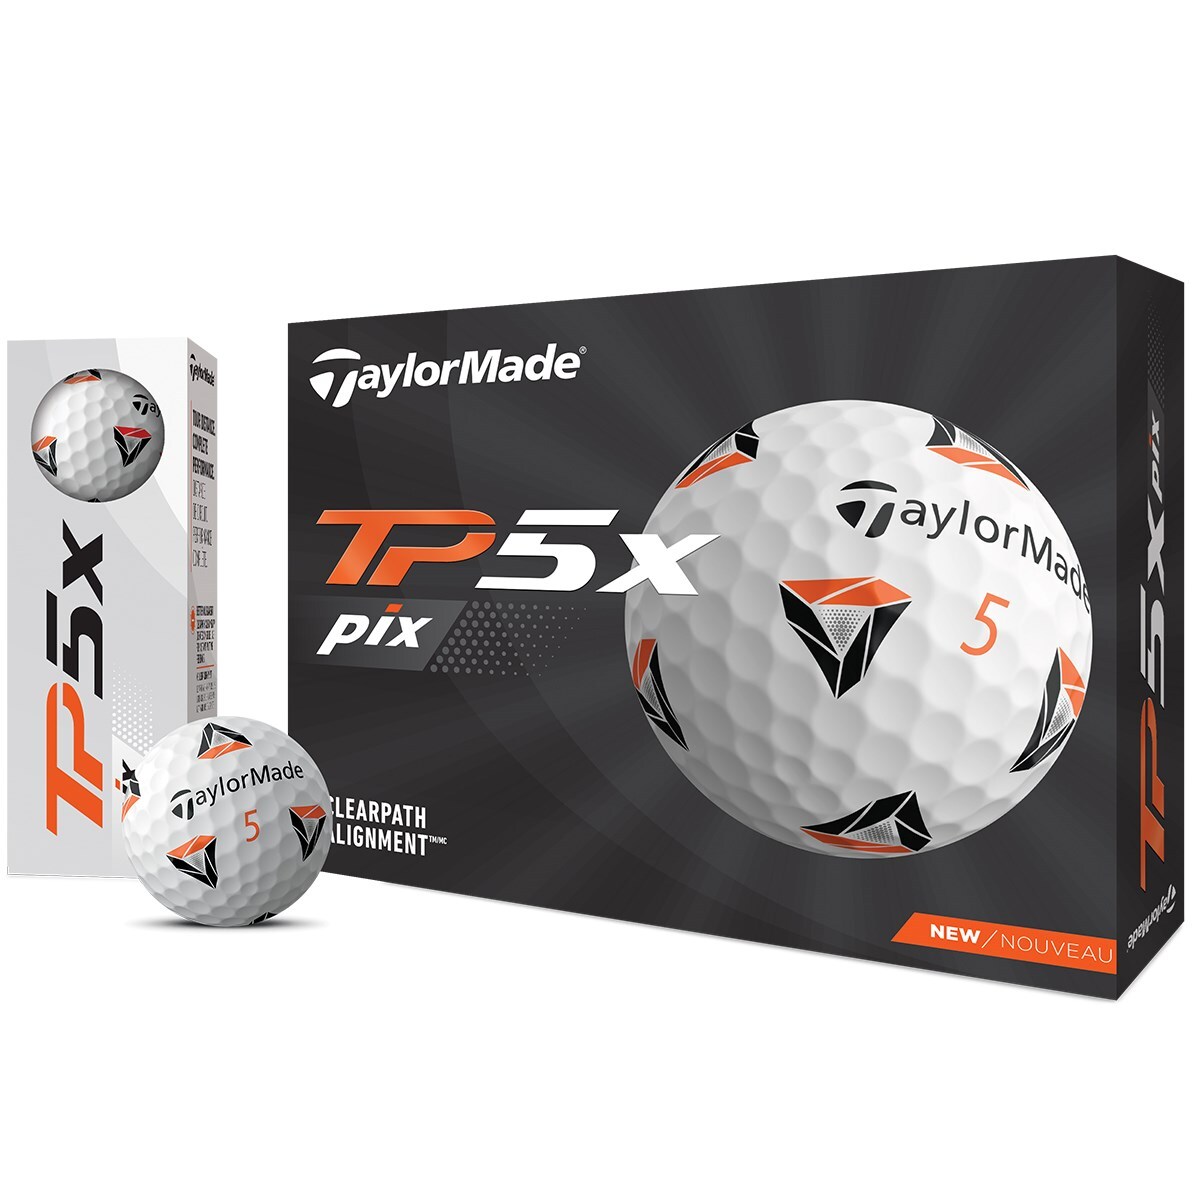 TP5x pix ボール(ゴルフボール)